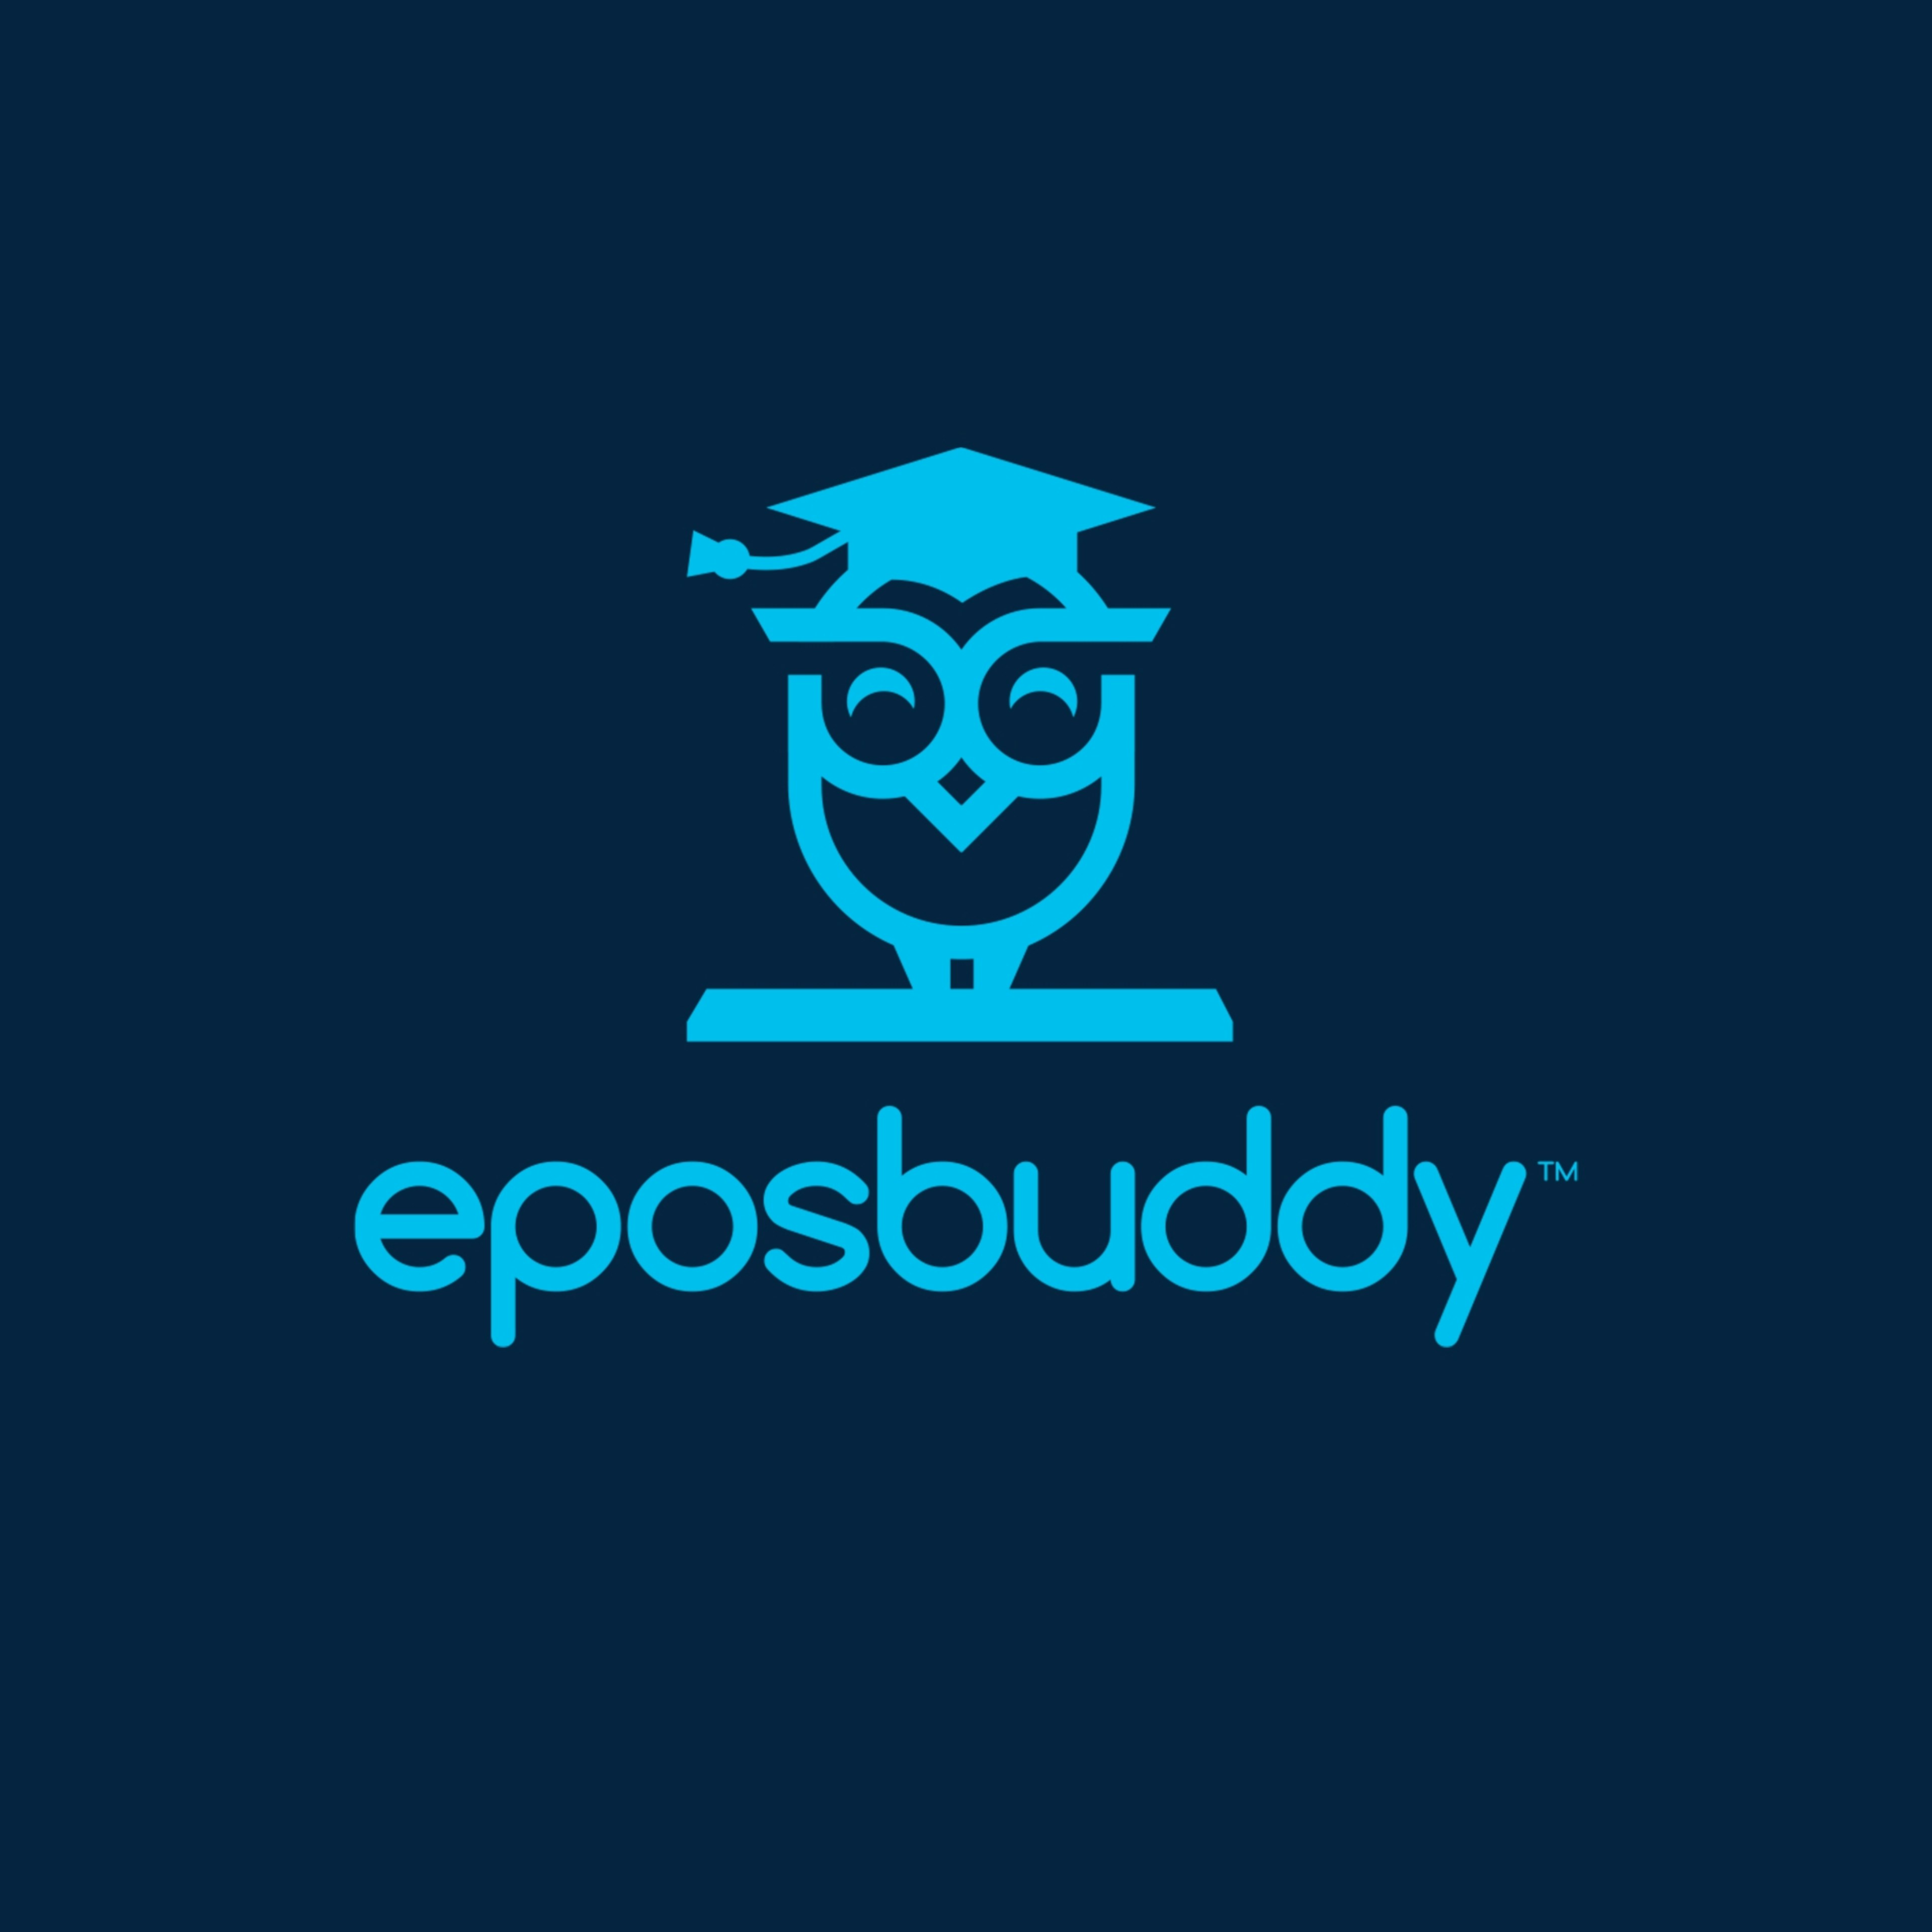 eposbuddy Logo